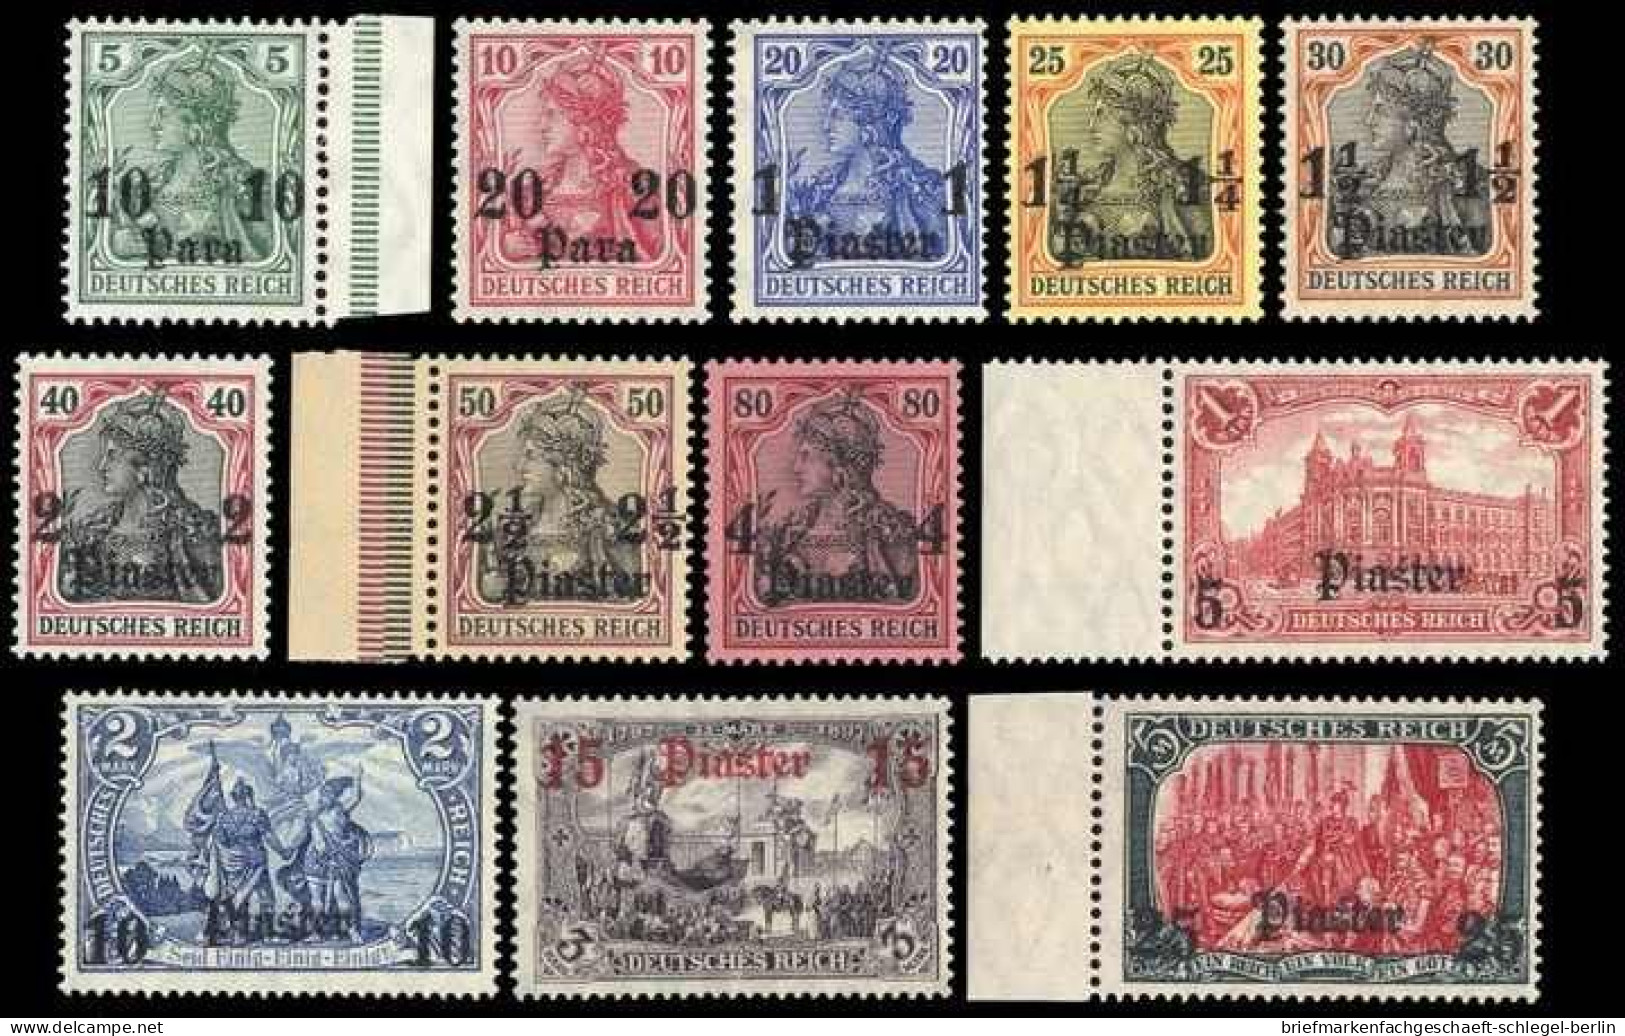 Deutsche Auslandspost Türkei, 1905, 36-47, Postfrisch, Ungebraucht - Deutsche Post In Marokko